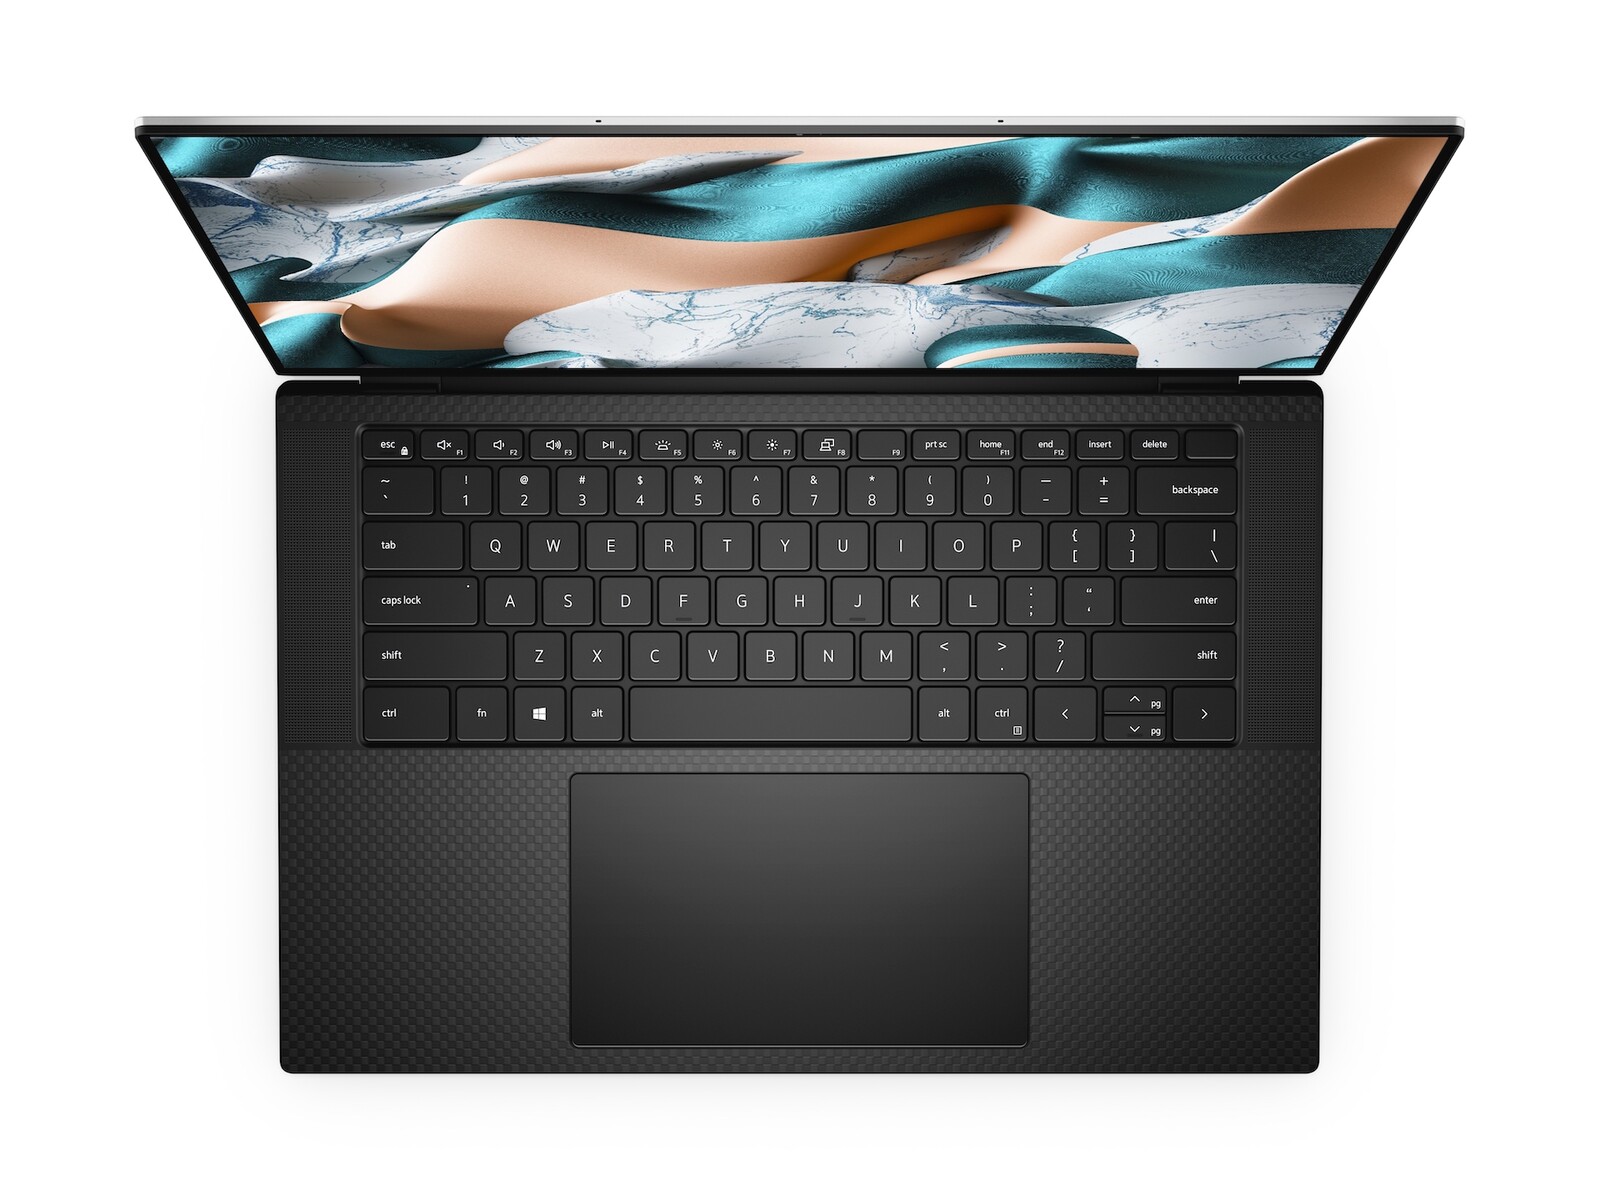 Vista de cima do notebook Dell XPS 15 na cor preta